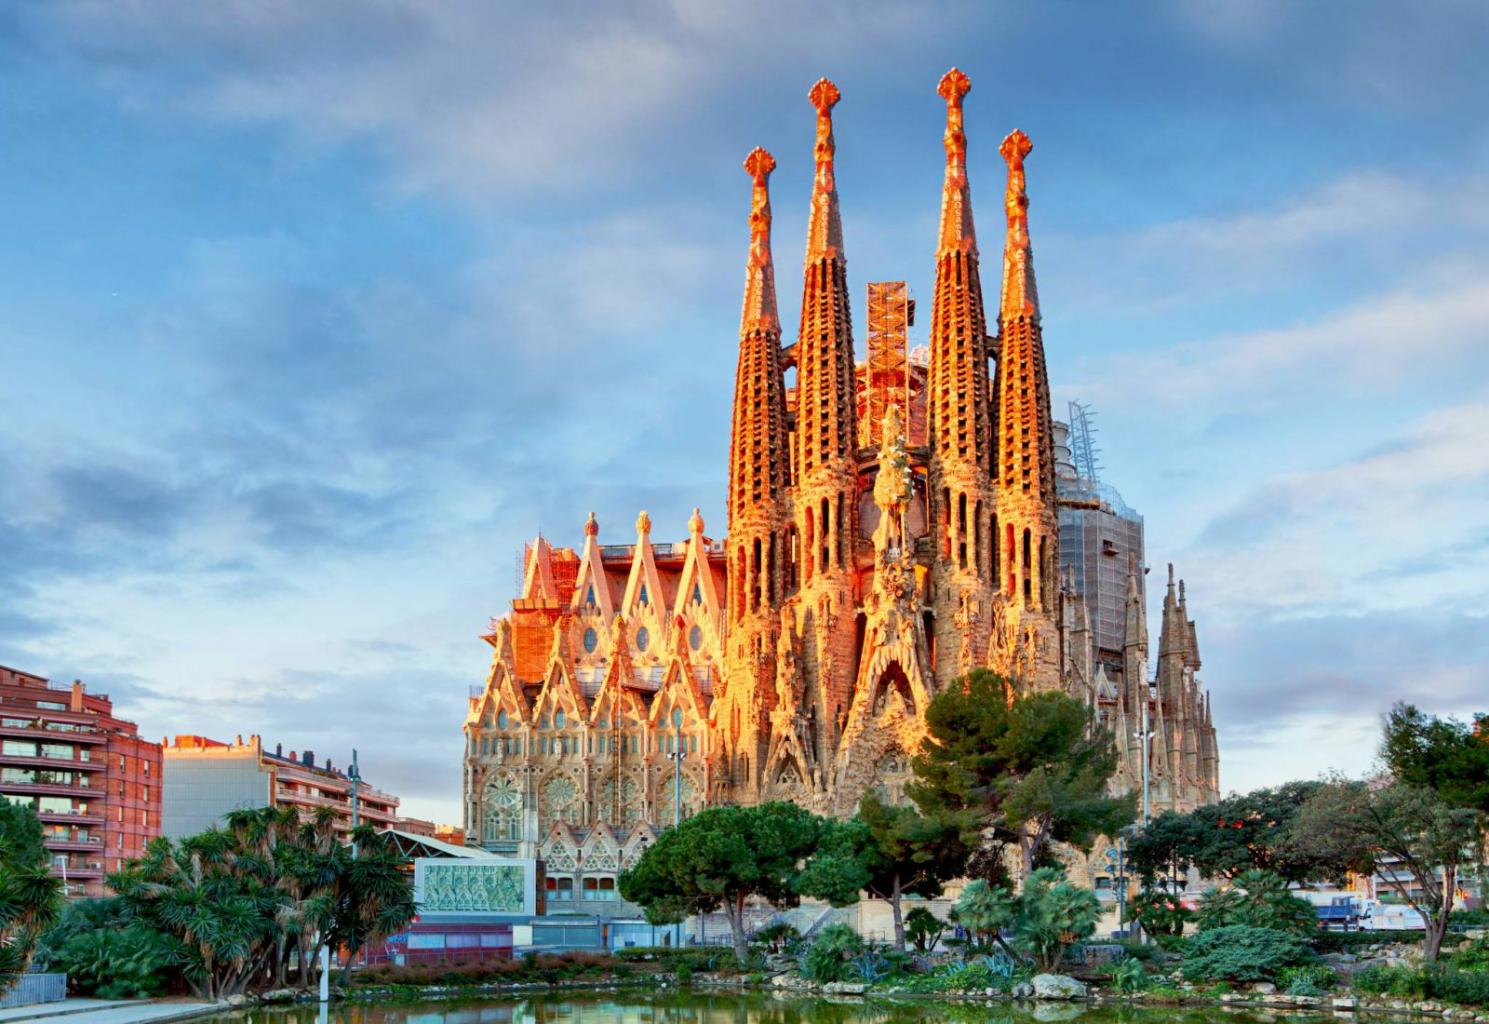  Barcelona to miejsce nieokiełznane niczym wyobraźnia Antonia Gaudiego. (Fot. iStock)